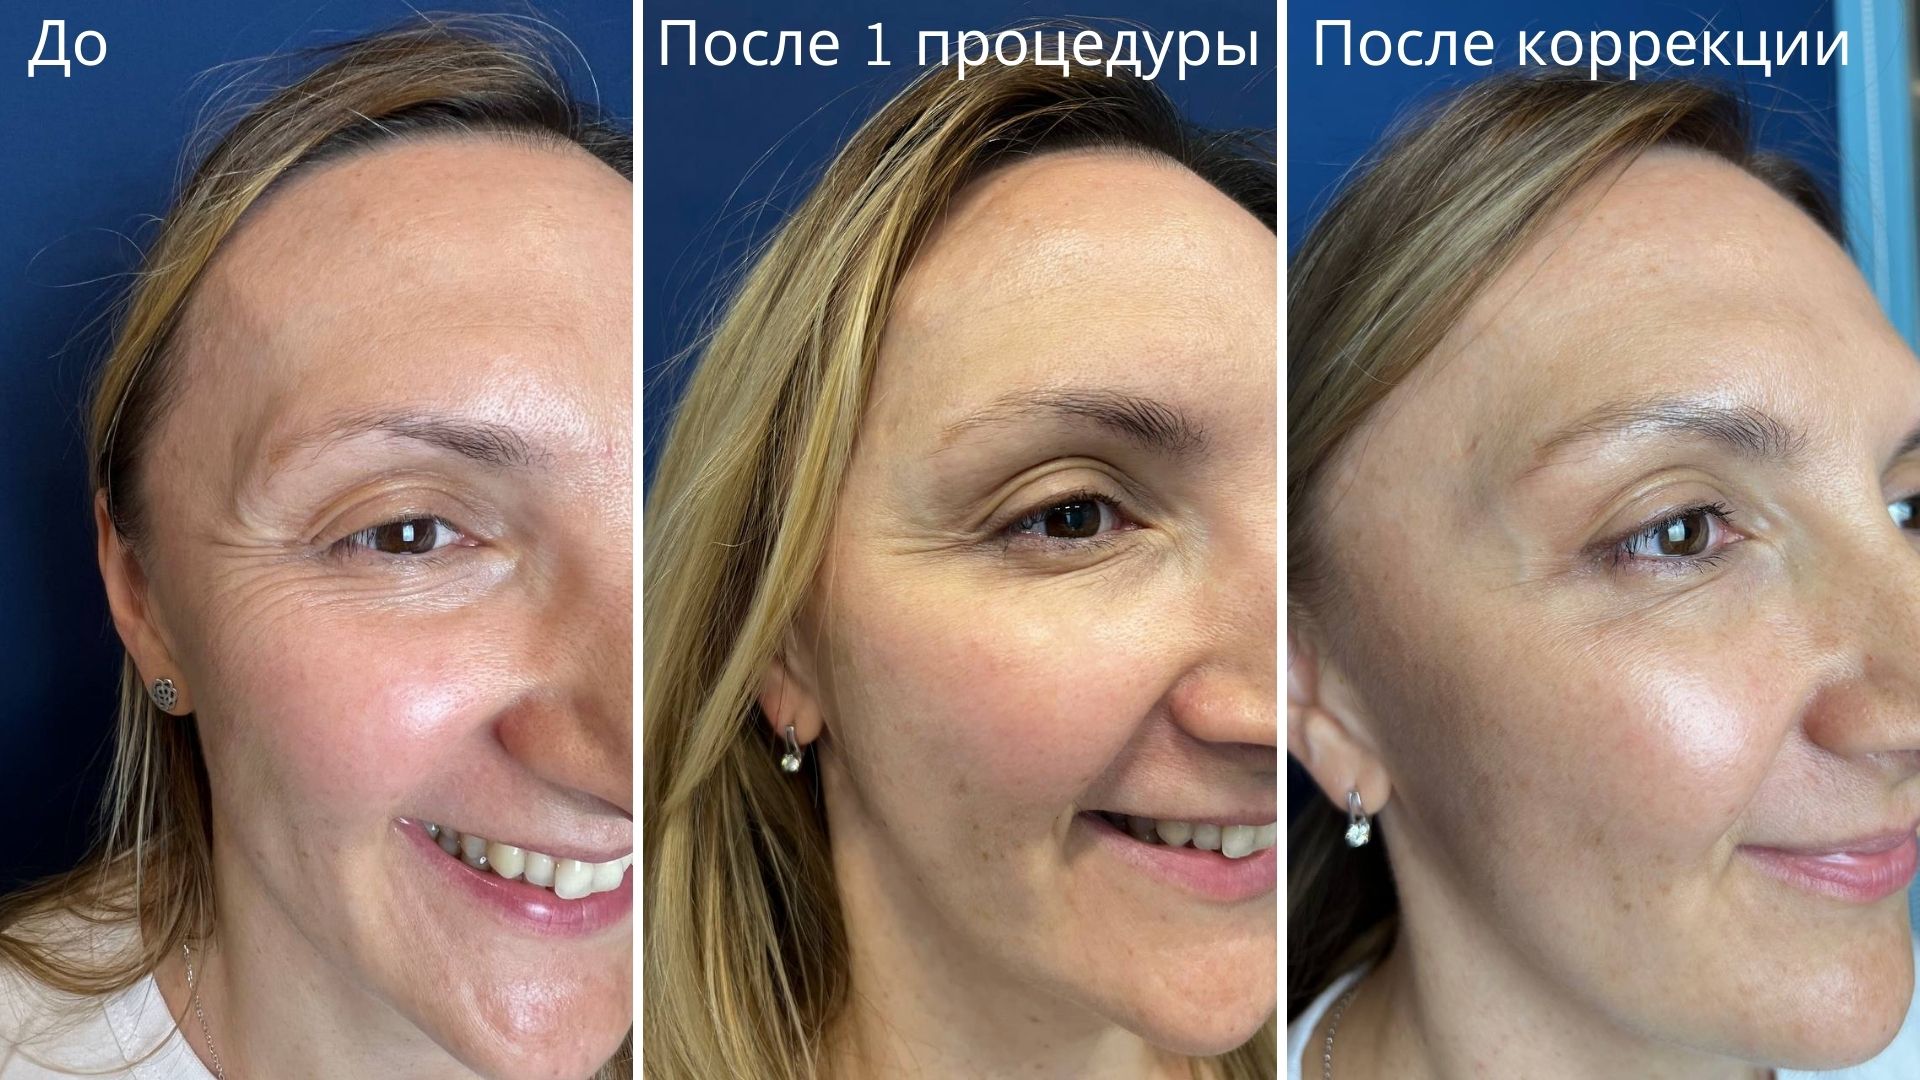 Мимика в зоне глаз во время улыбки на разных этапах процедуры ботулинотерапии